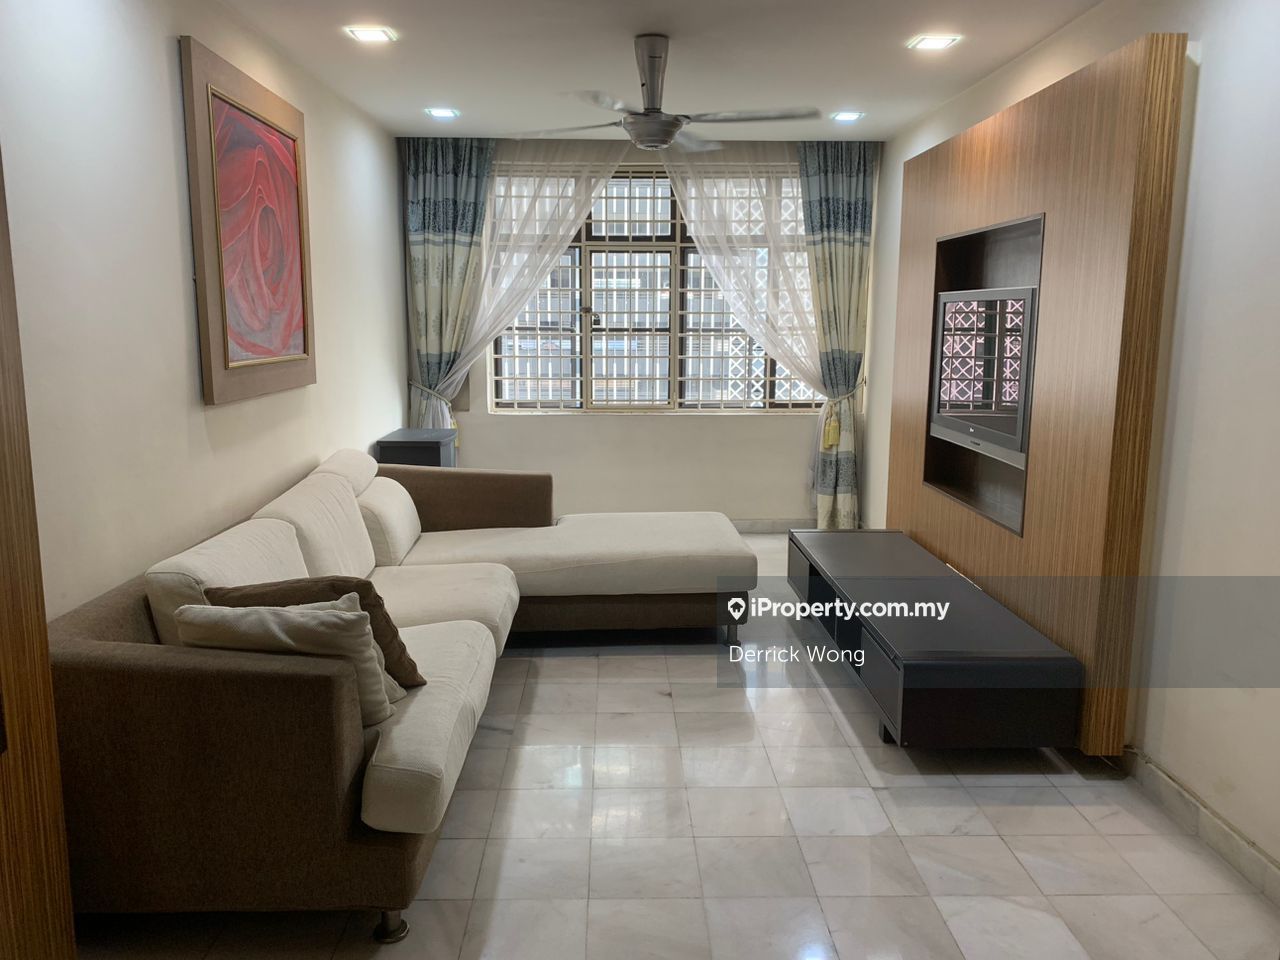 Tiara Faber Condominium 2 bedrooms for sale in Taman Desa, Kuala Lumpur ...